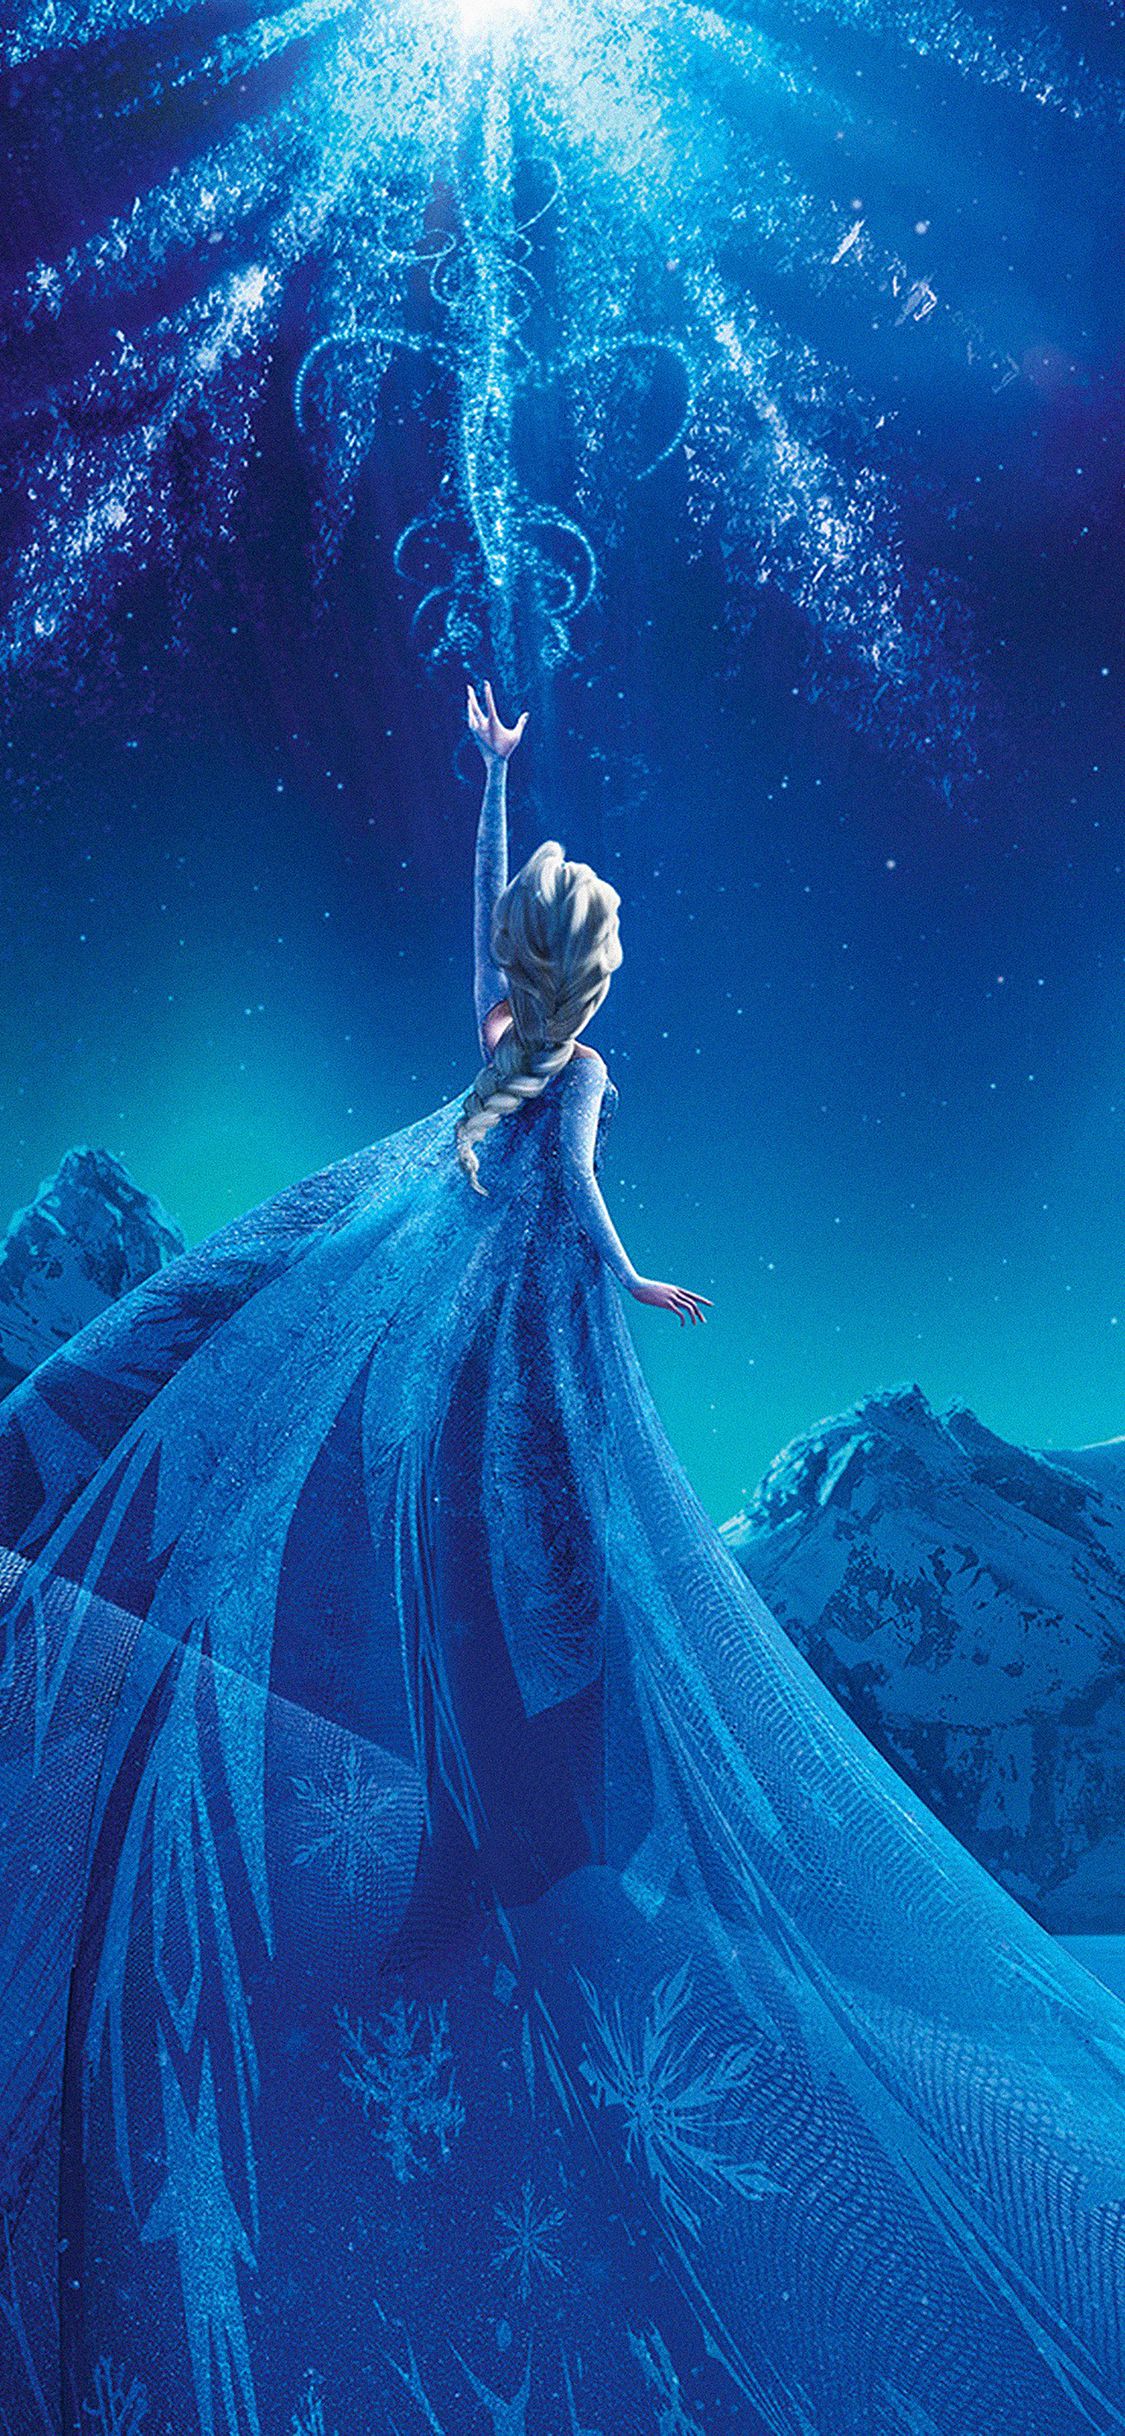 Wallpaper Elsa Frozen Queen Disney Illust Snow Art